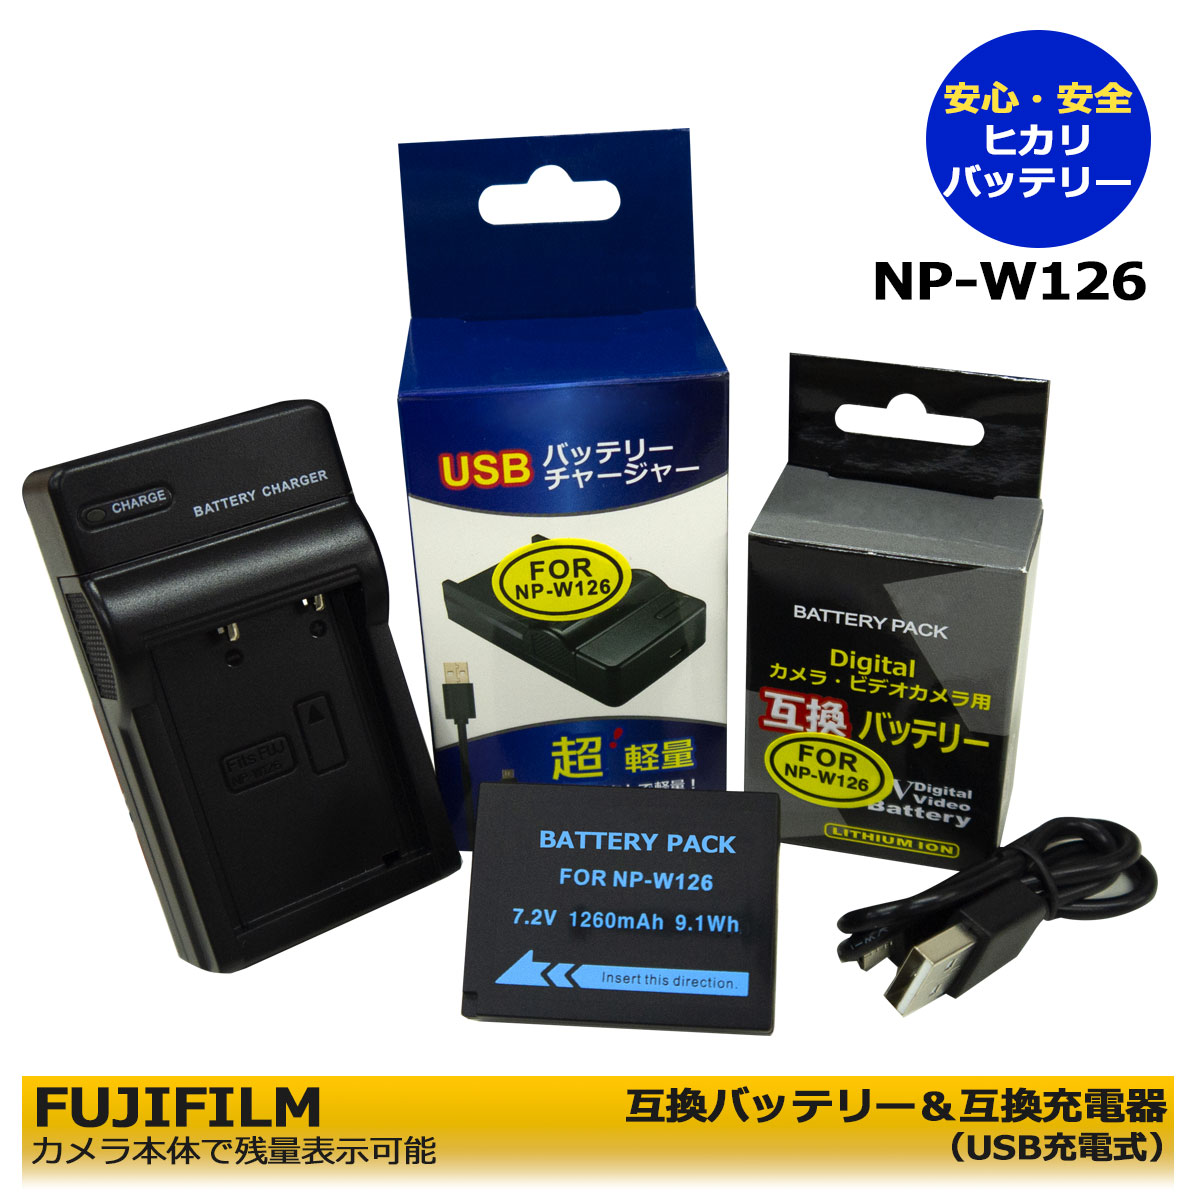 str 富士フィルム NP-W126   NP-W126S 互換バッテリー 1個 [残量表示可能 純正充電器で充電可能 純正品と同じように使用可能]＆